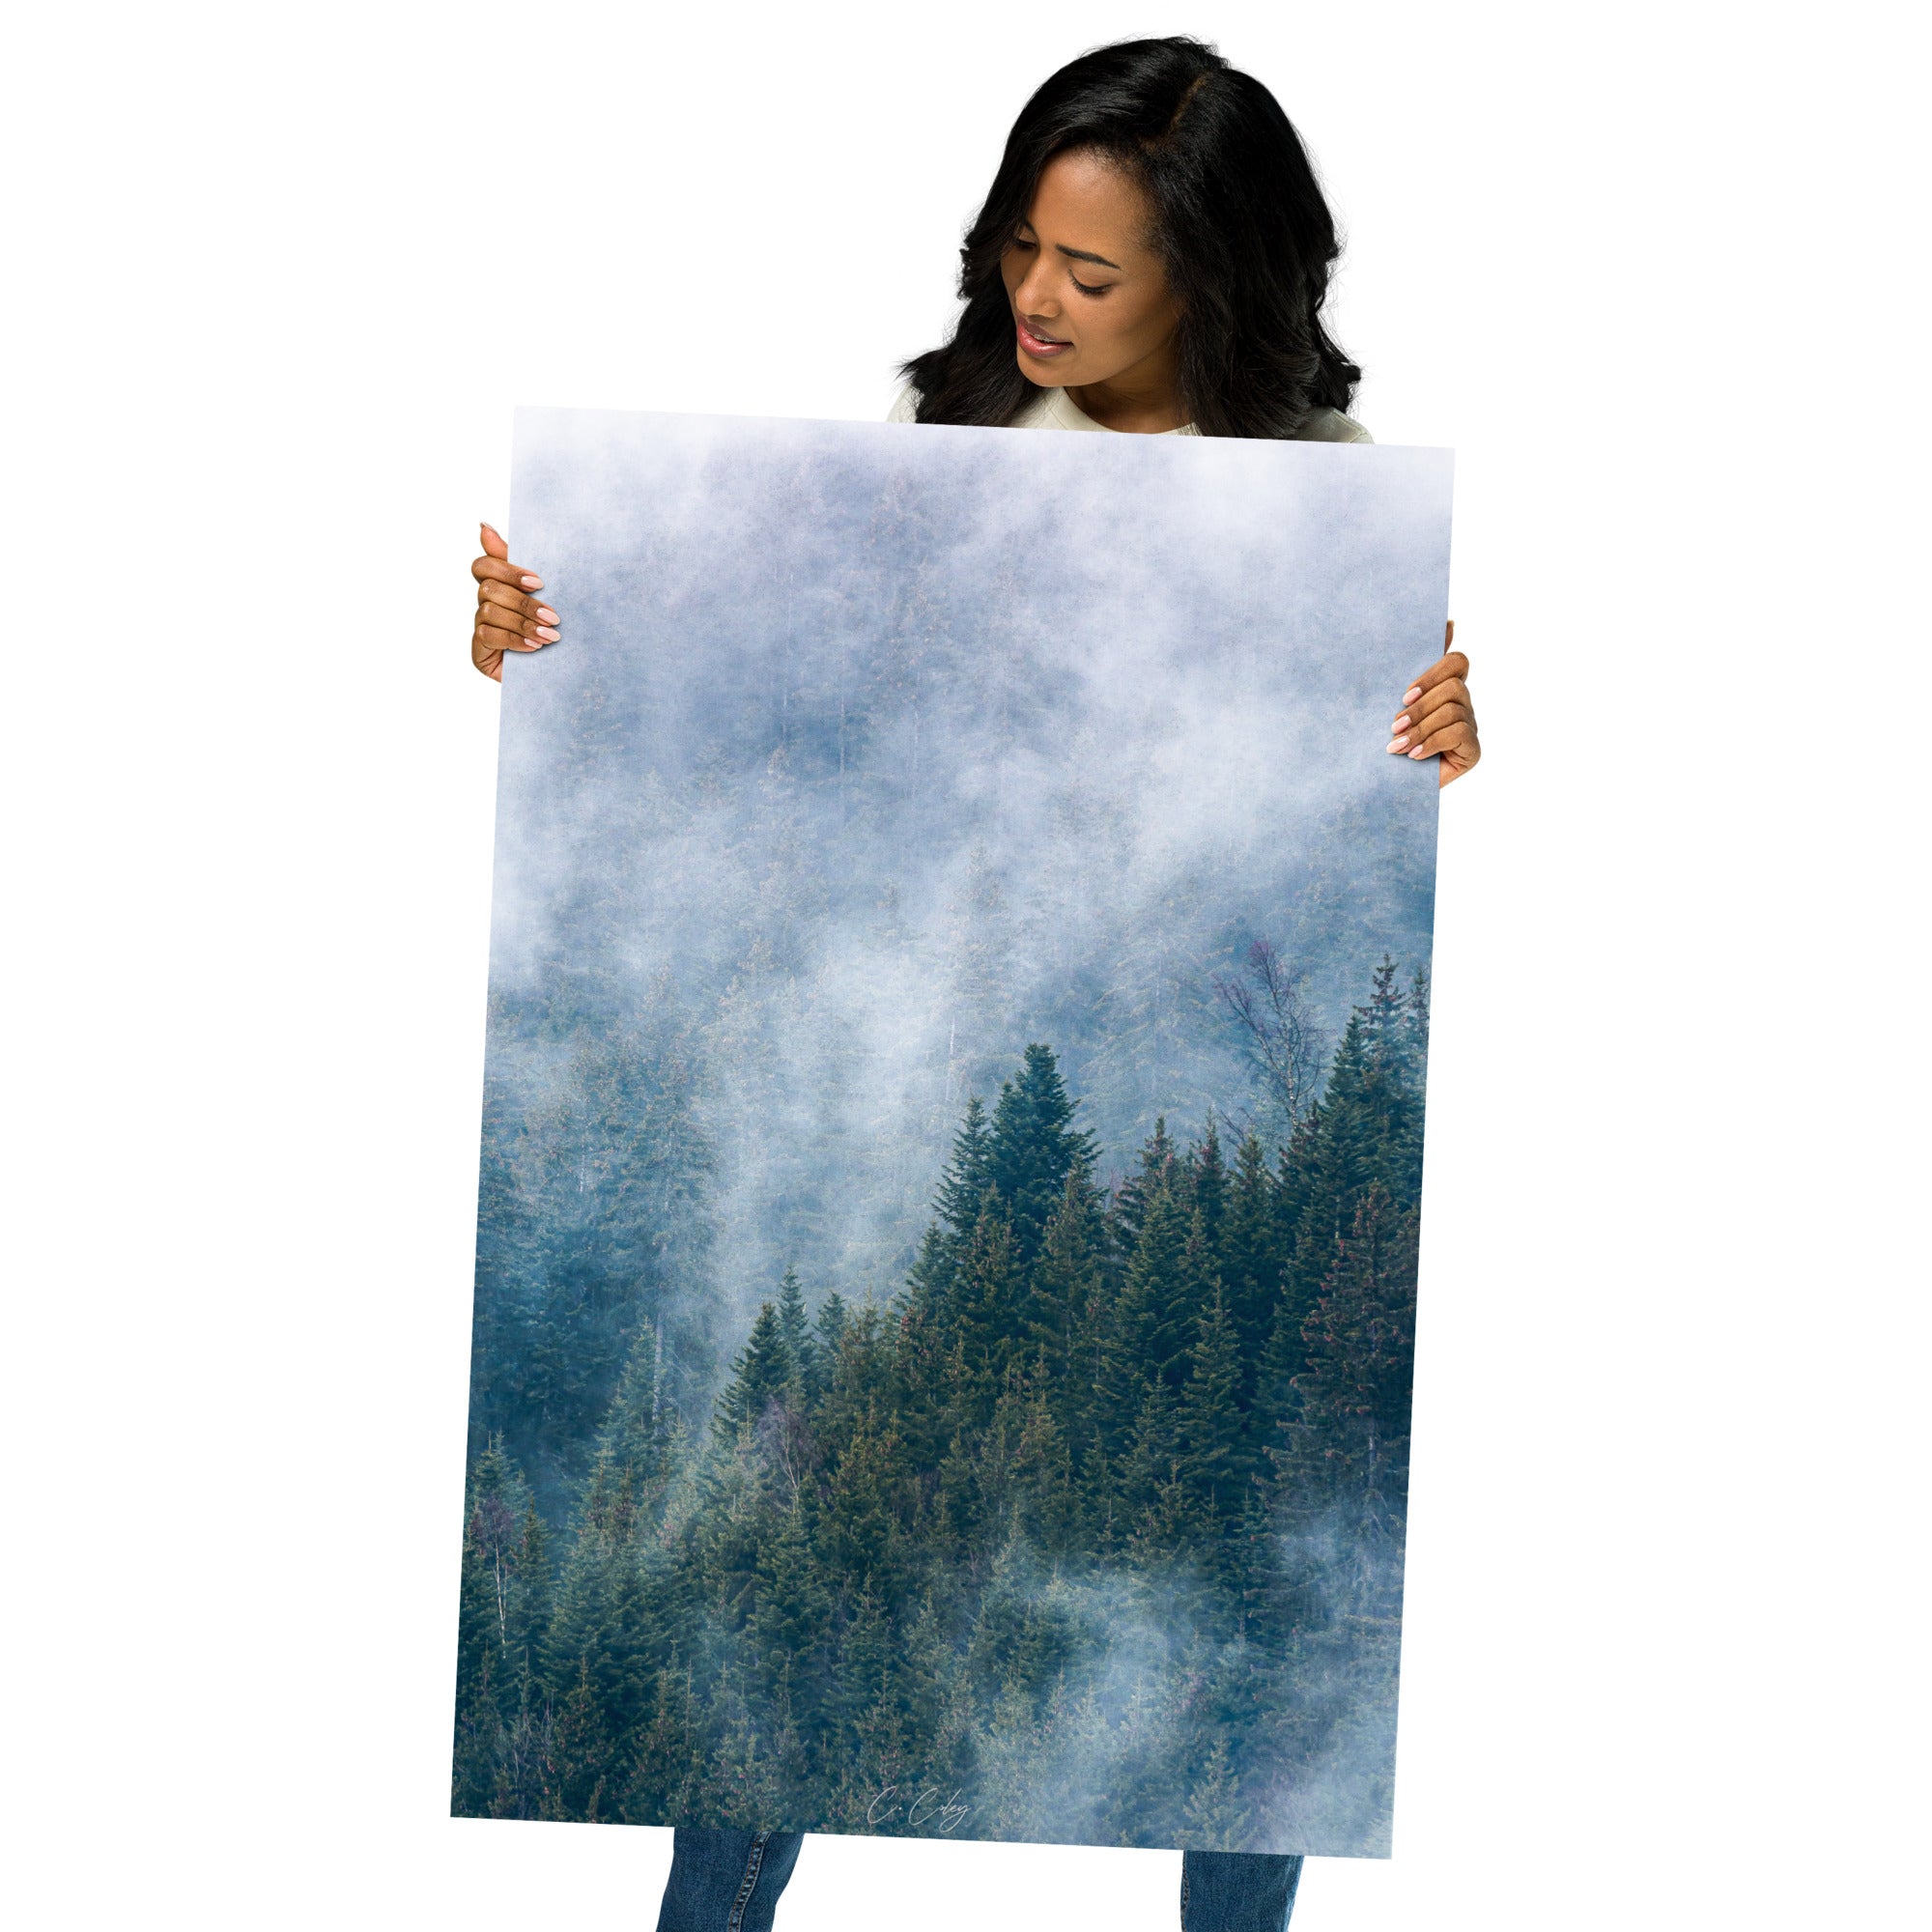 Vue aérienne d'une dense forêt de sapins enveloppée de nuages, capturée avec précision par Charles Coley, évoquant sérénité et mystère.